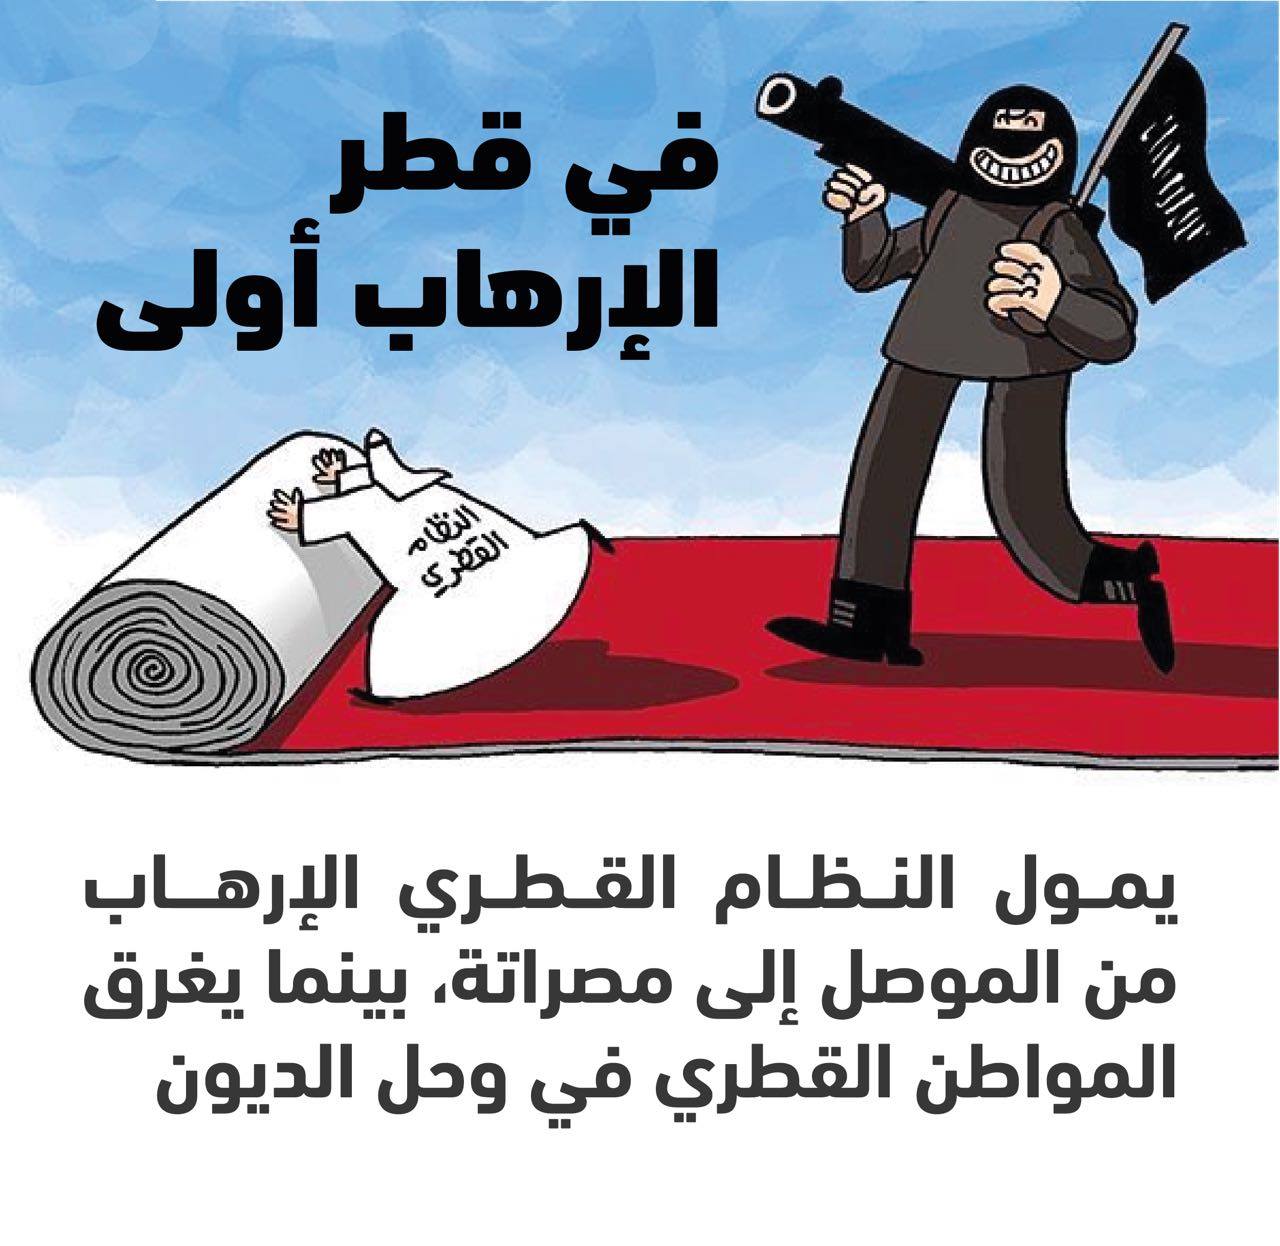 في قطر الإرهاب أولى